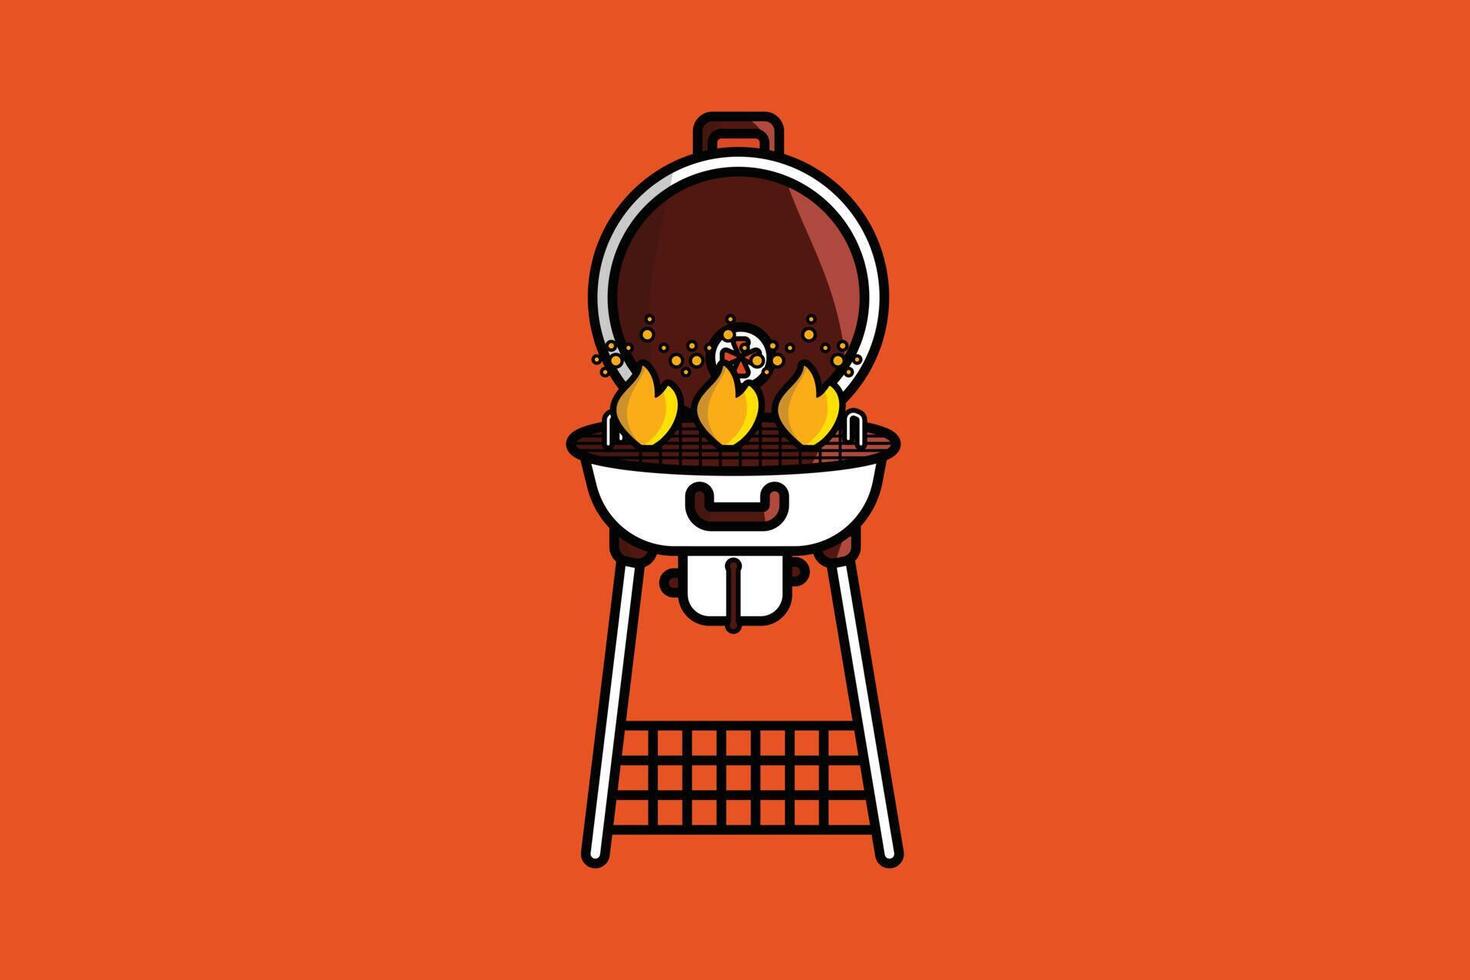 runden Grill Grill mit Flammen Vektor Illustration. Essen Grill Objekt Symbol Konzept. elektrisch Grill Grill Gerät zum braten Essen Vektor Design mit Schatten auf Orange Hintergrund.